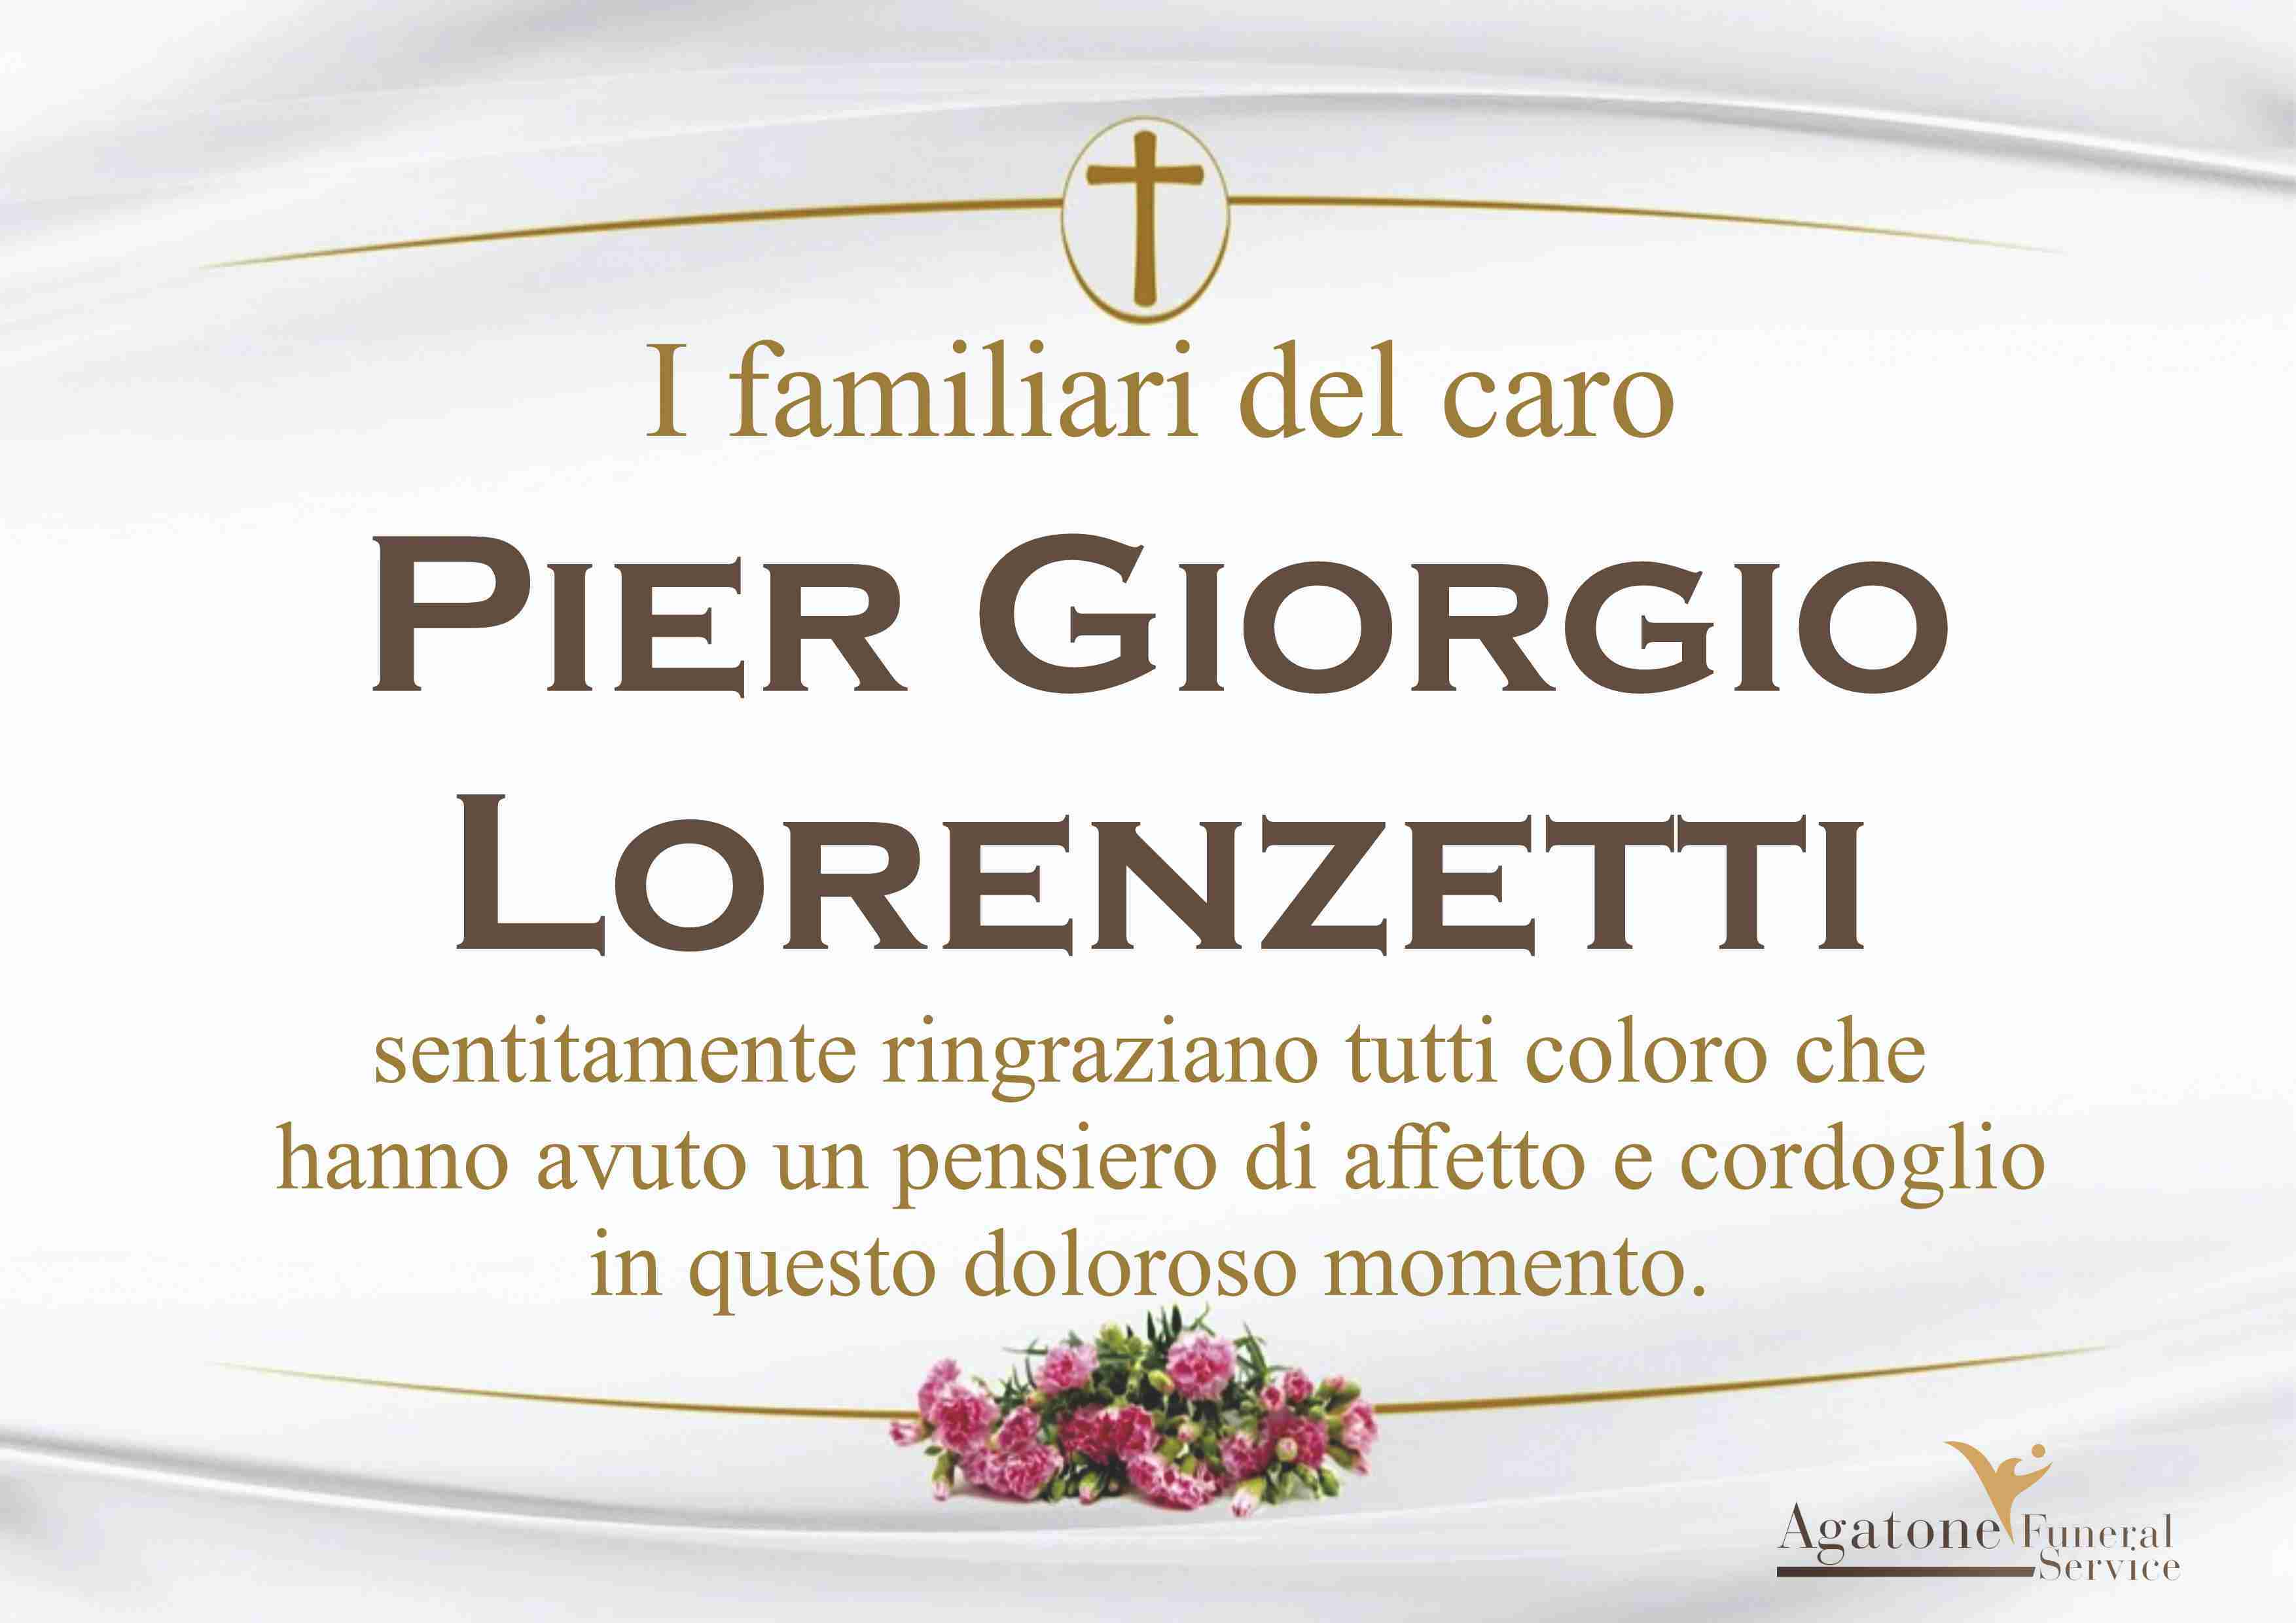 Pier Giorgio Lorenzetti